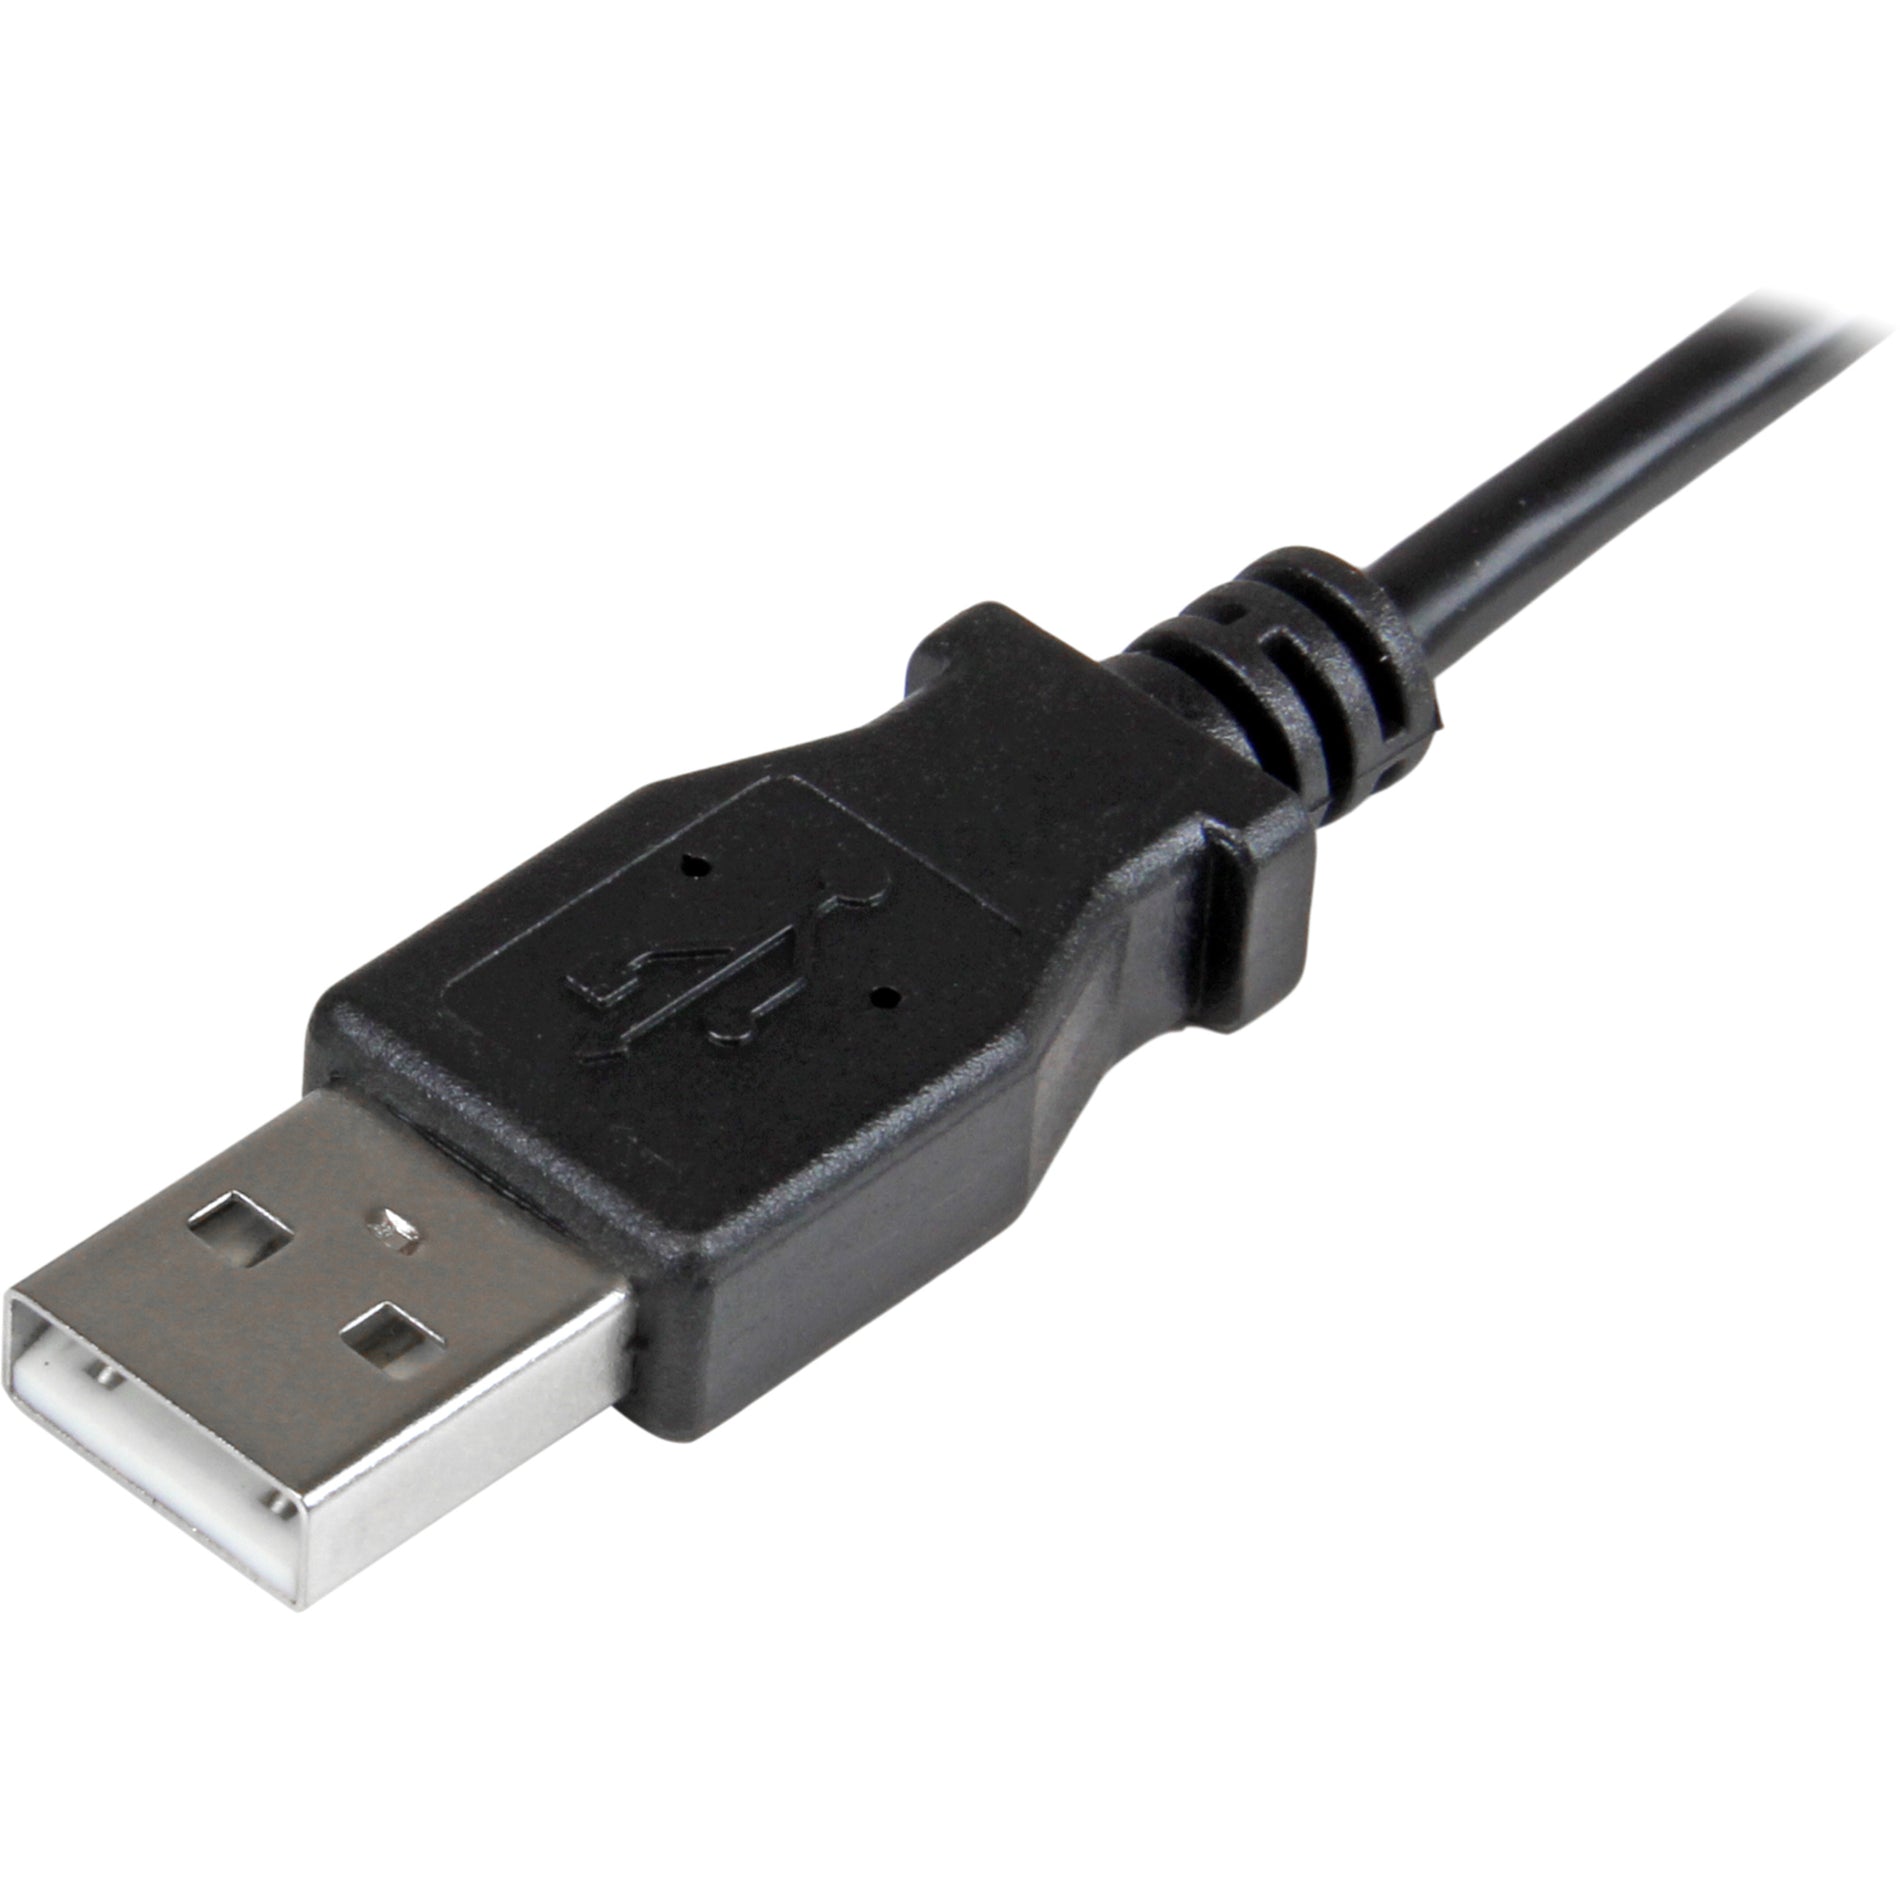 ستارتيك.كوم USBAUB2MRA كابل شحن ومزامنة مايكرو-USB ذكر إلى ذكر - زاوية اليمين مايكرو-USB - 2 م (6 قدم) ، USB 2.0 A إلى مايكرو USB